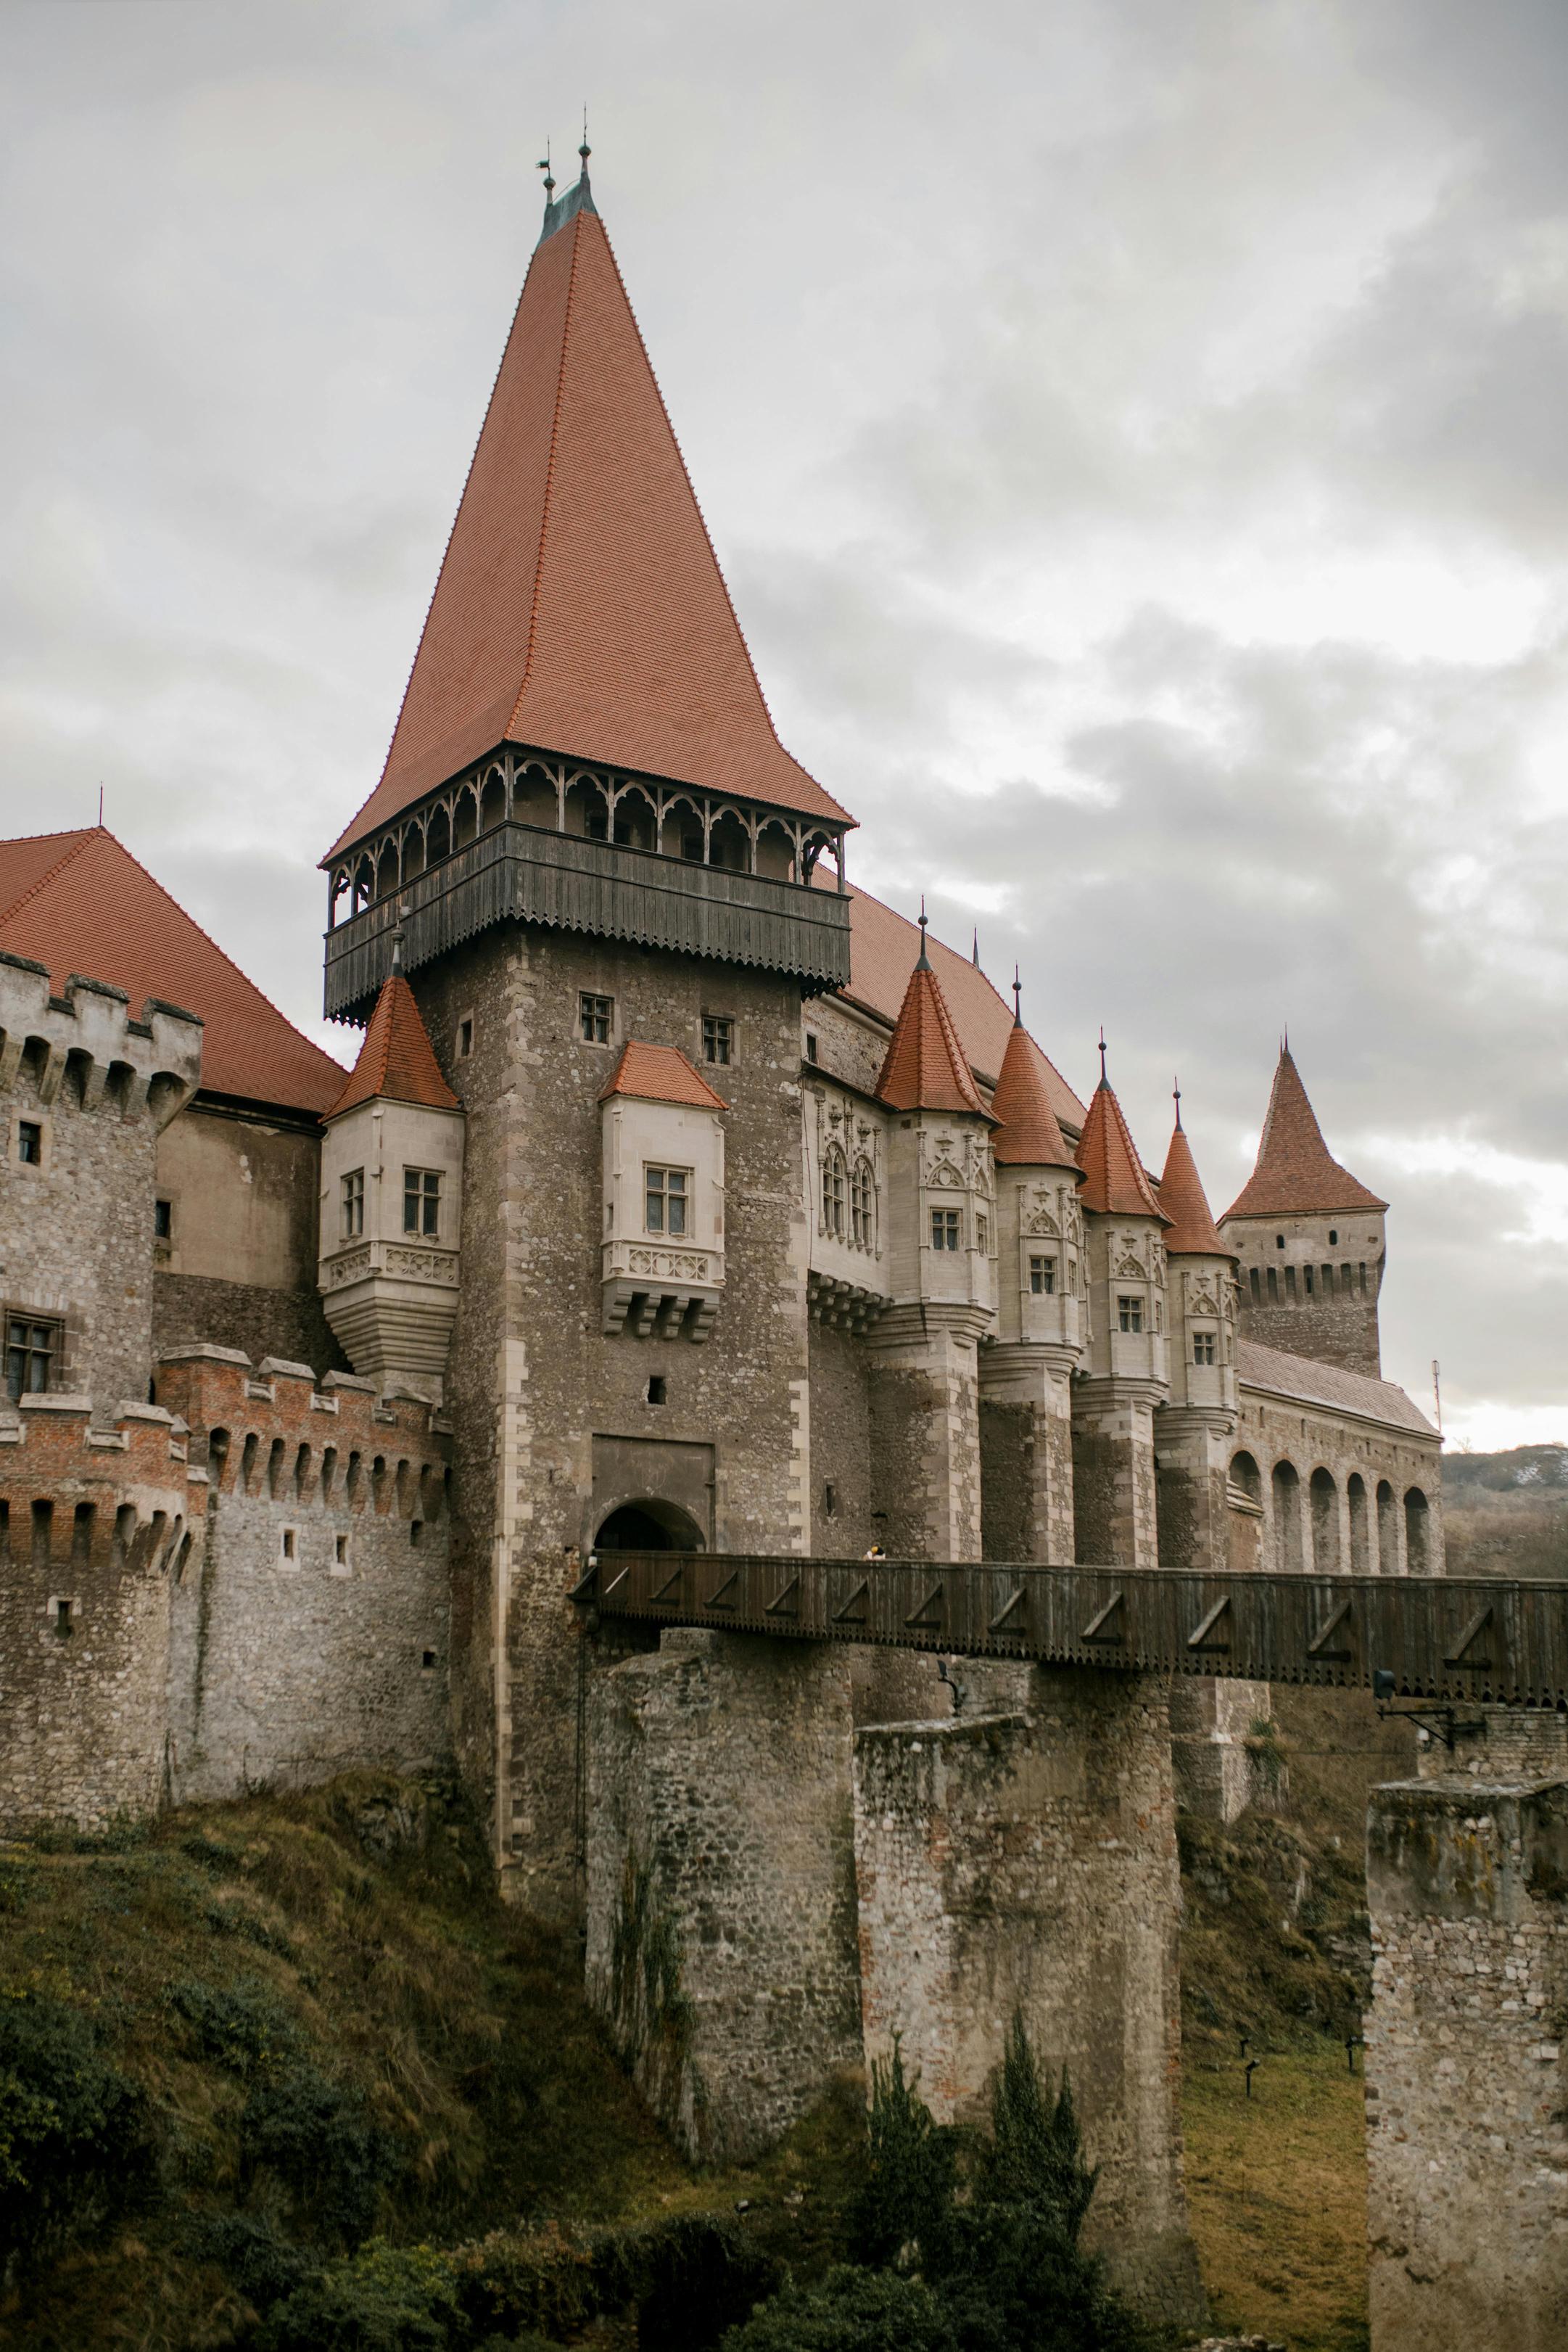 Znaczące wydarzenia w historii jankowic – średniowiecze i renesans